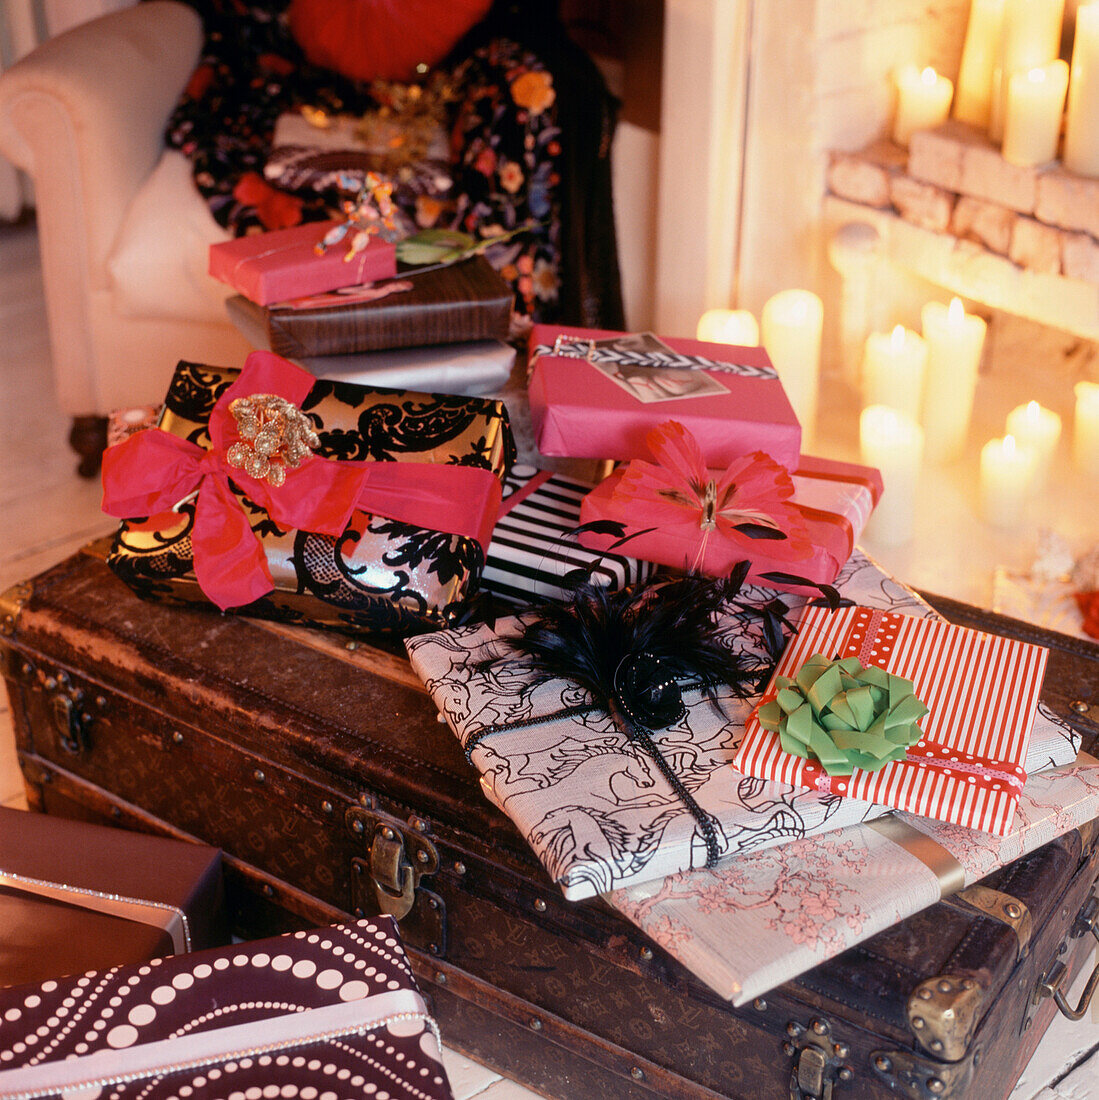 Stapel bunt verpackter Weihnachtsgeschenke auf einem Wohnzimmertisch